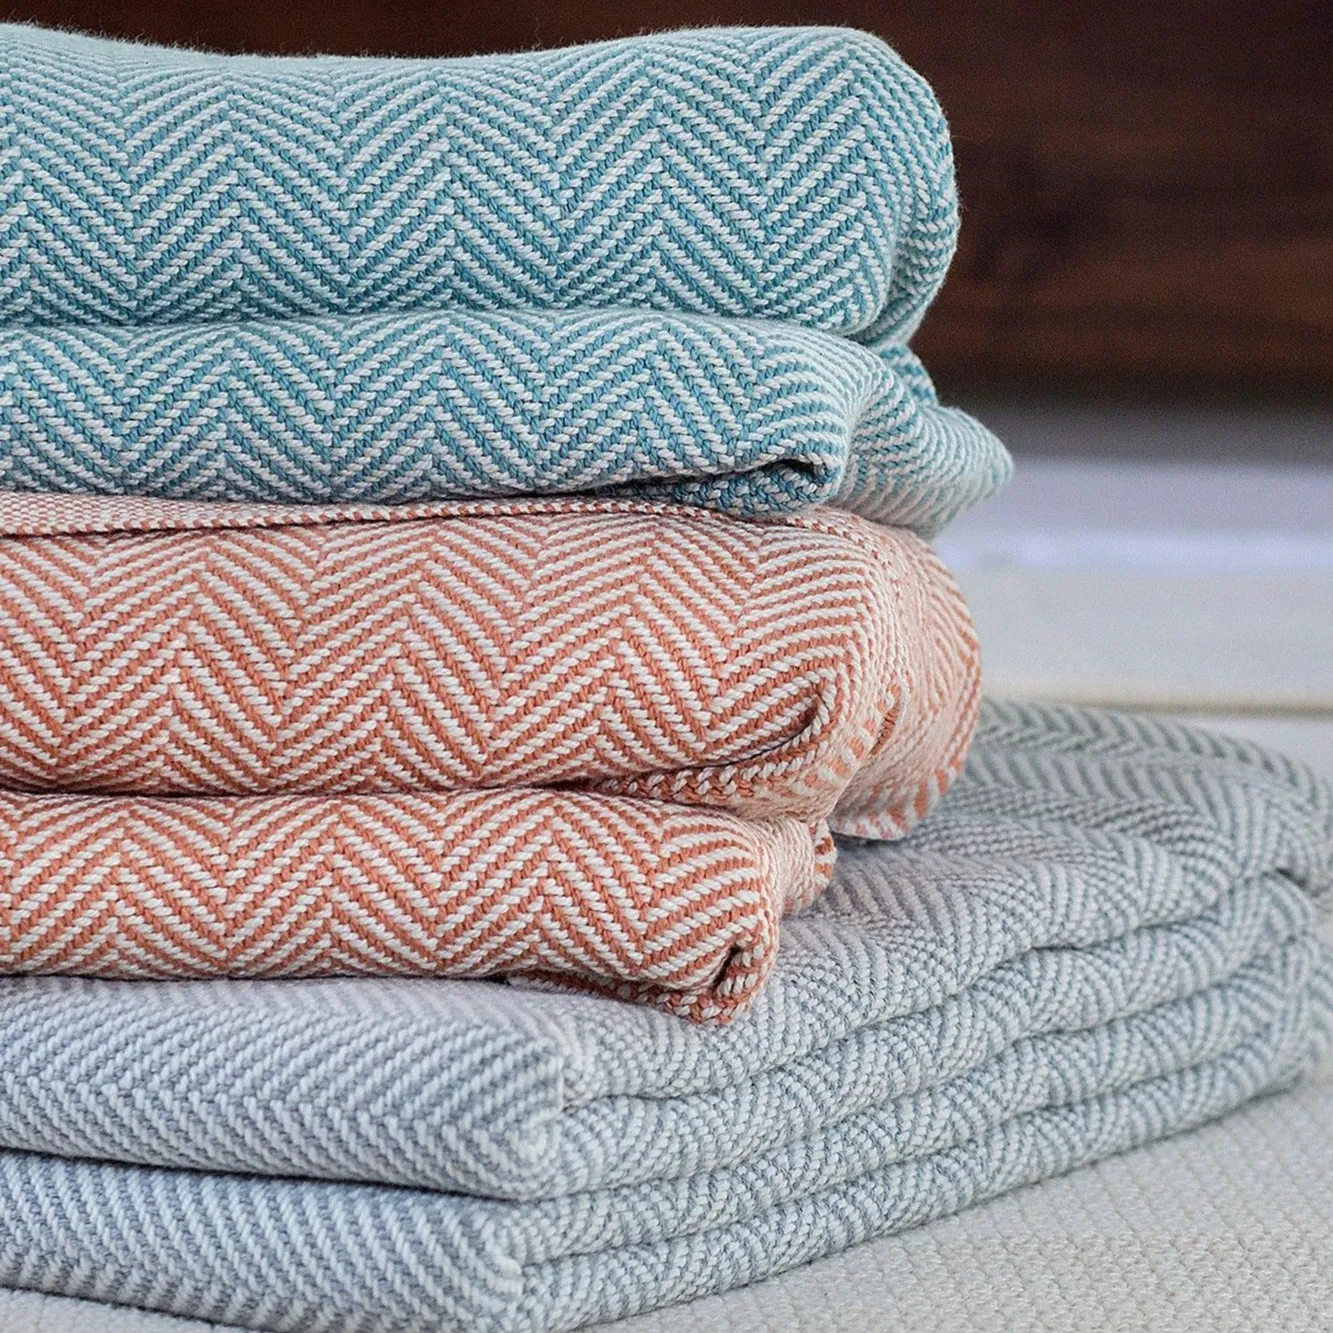 Хит продаж, хлопковые органические одеяла с индивидуальным ярлыком по заводской цене и индийское Хлопковое одеяло ручной работы